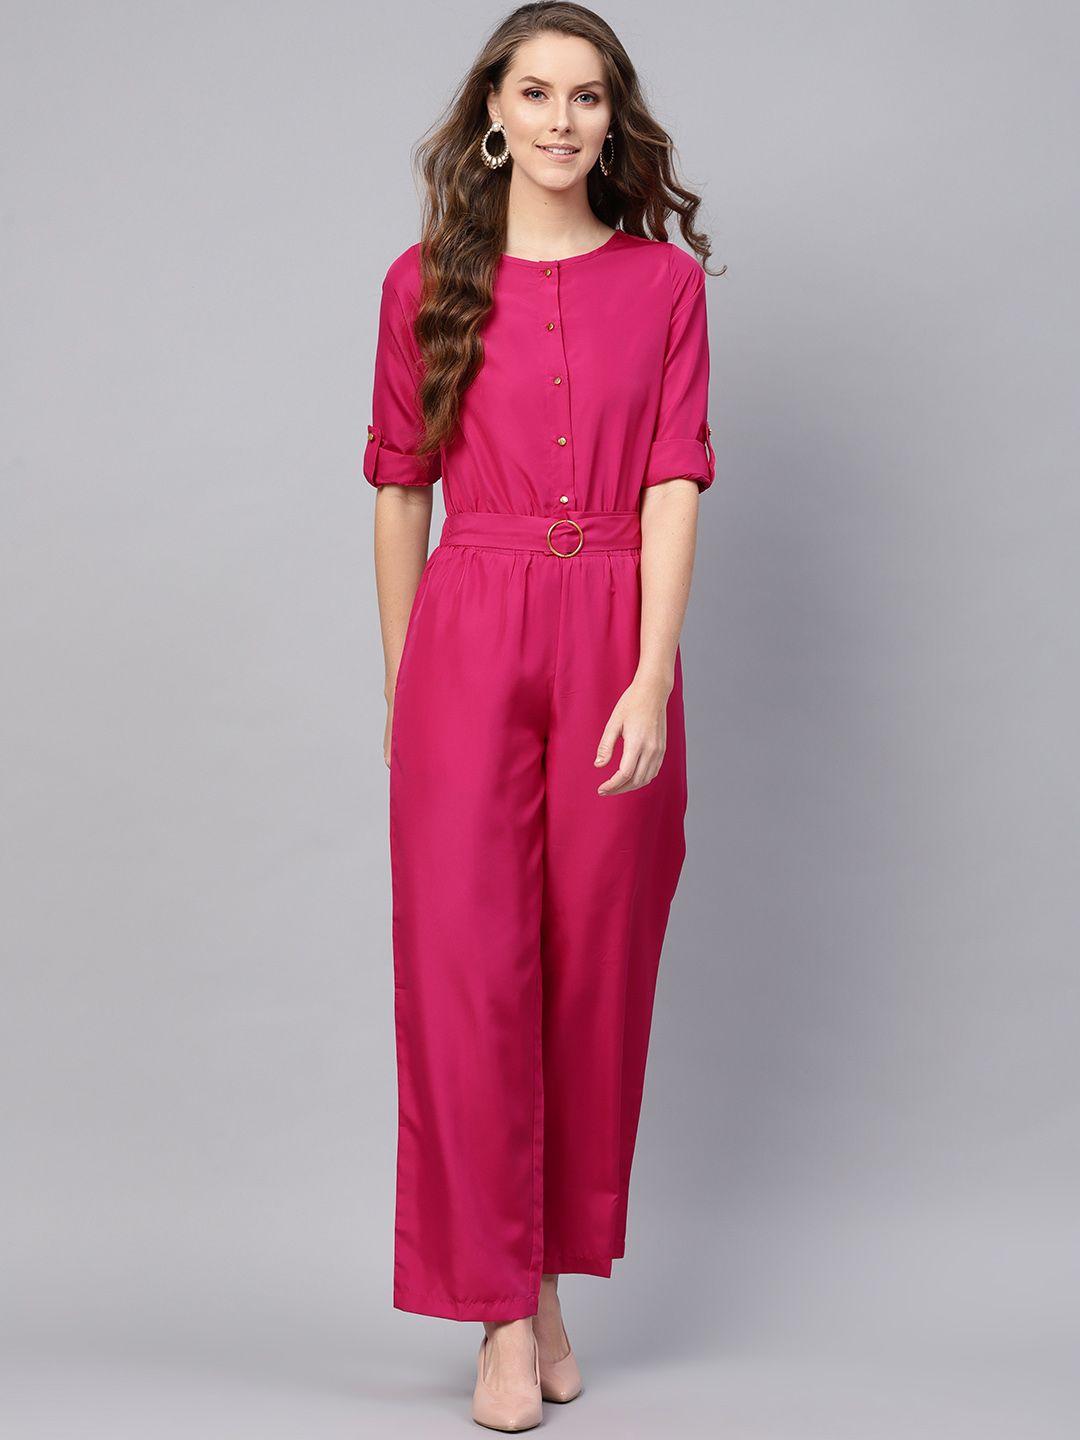 sassafras women fuchsia pink solid basic jumpsuit